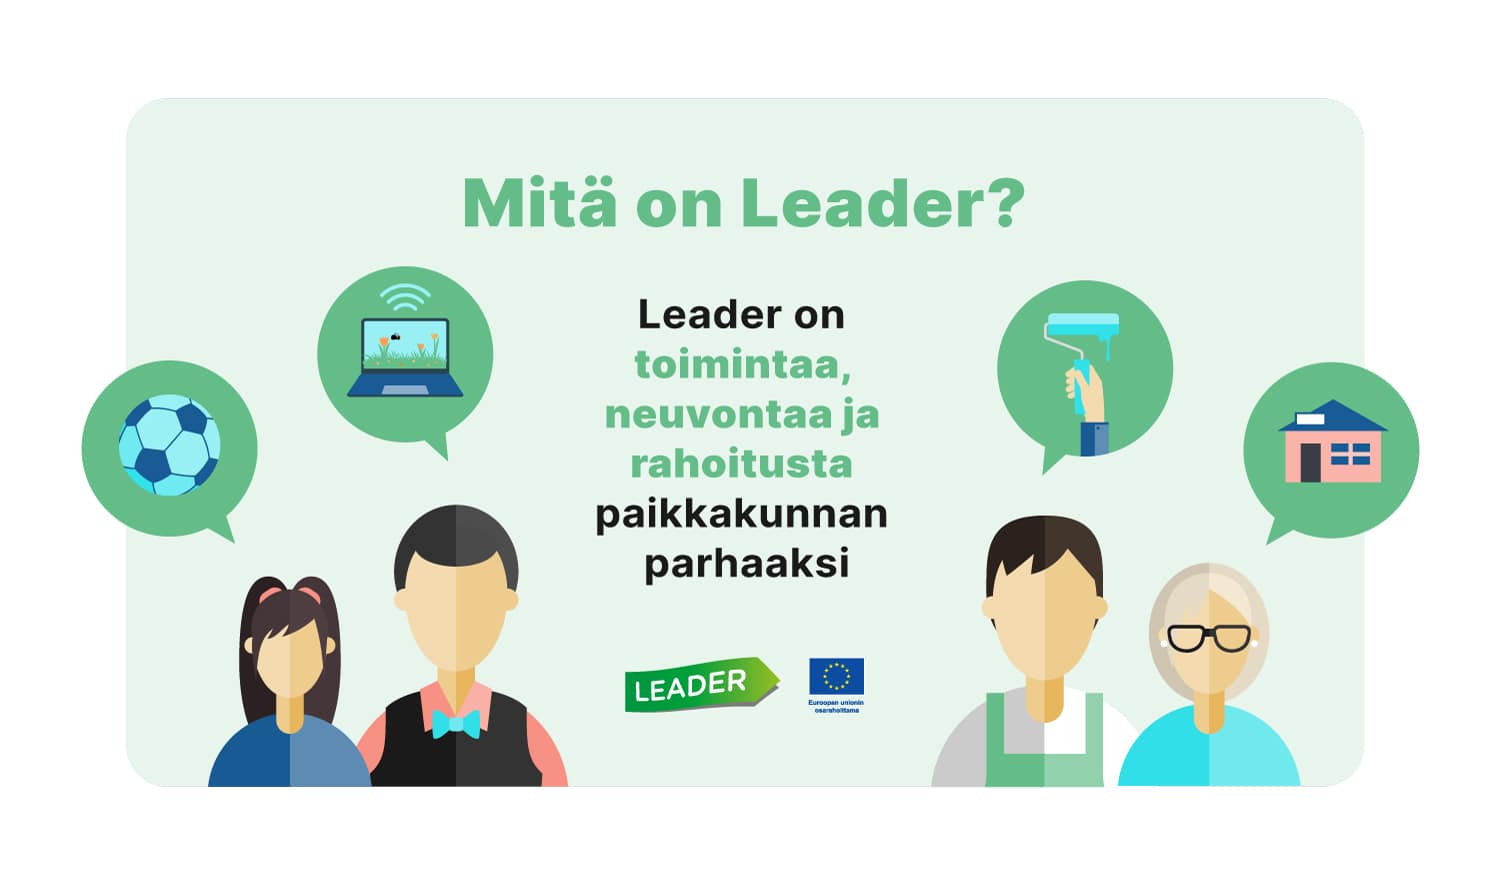 Mitä on Leader? Leader on toimintaa, neuvontaa ja rahoitusta paikkakunnan parhaksi.